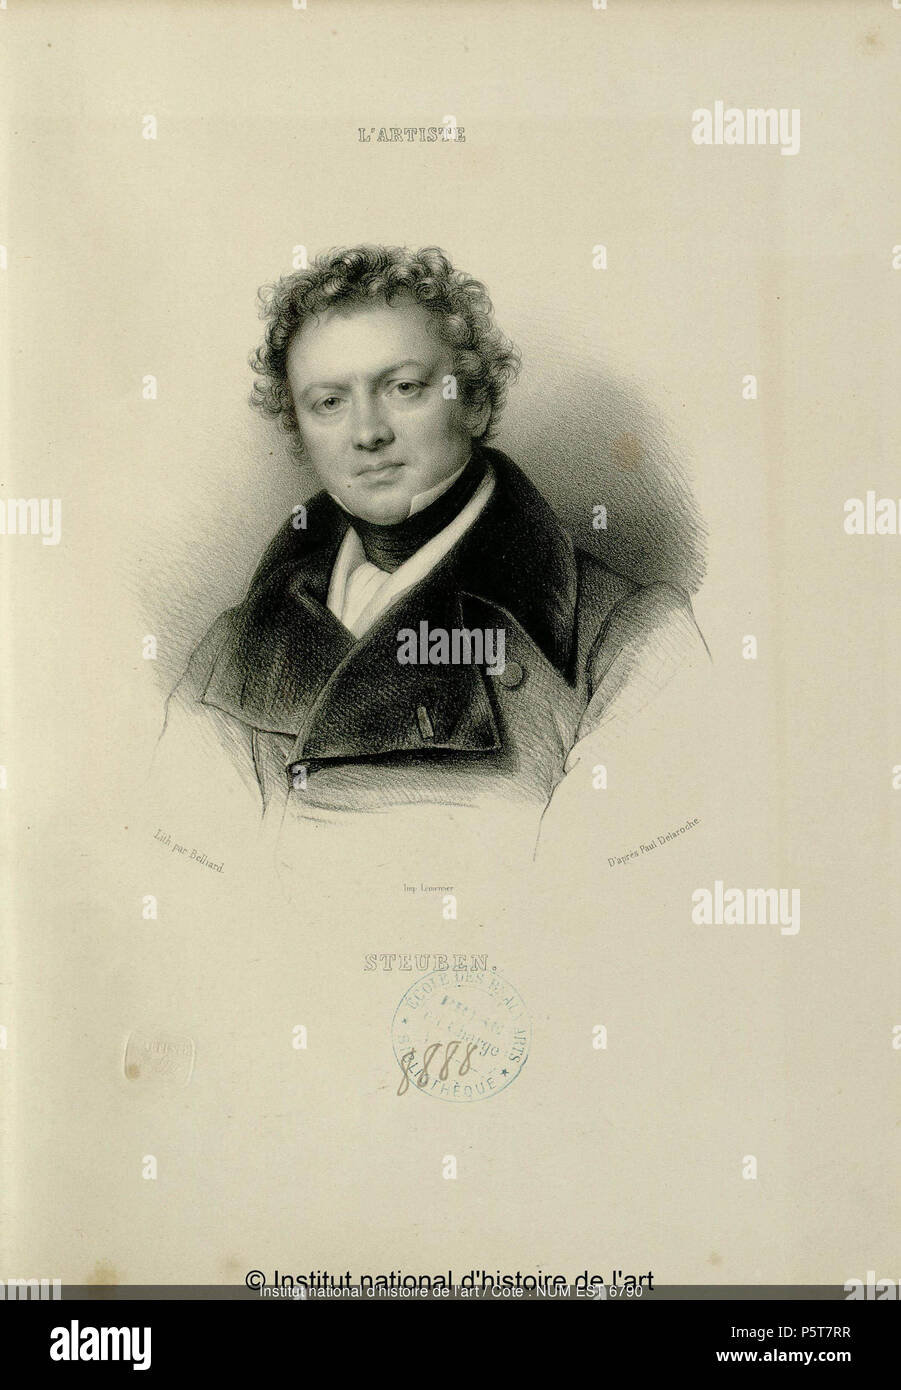 N/A. Anglais : Portrait de Steuben, Charles Auguste de (1788-1856) . Delaroche, Paul (1797-1856), Belliard, Zéphirin-Félix-Jean-Marius (1798-1861) 325 Charles Auguste de Steuben00 Banque D'Images